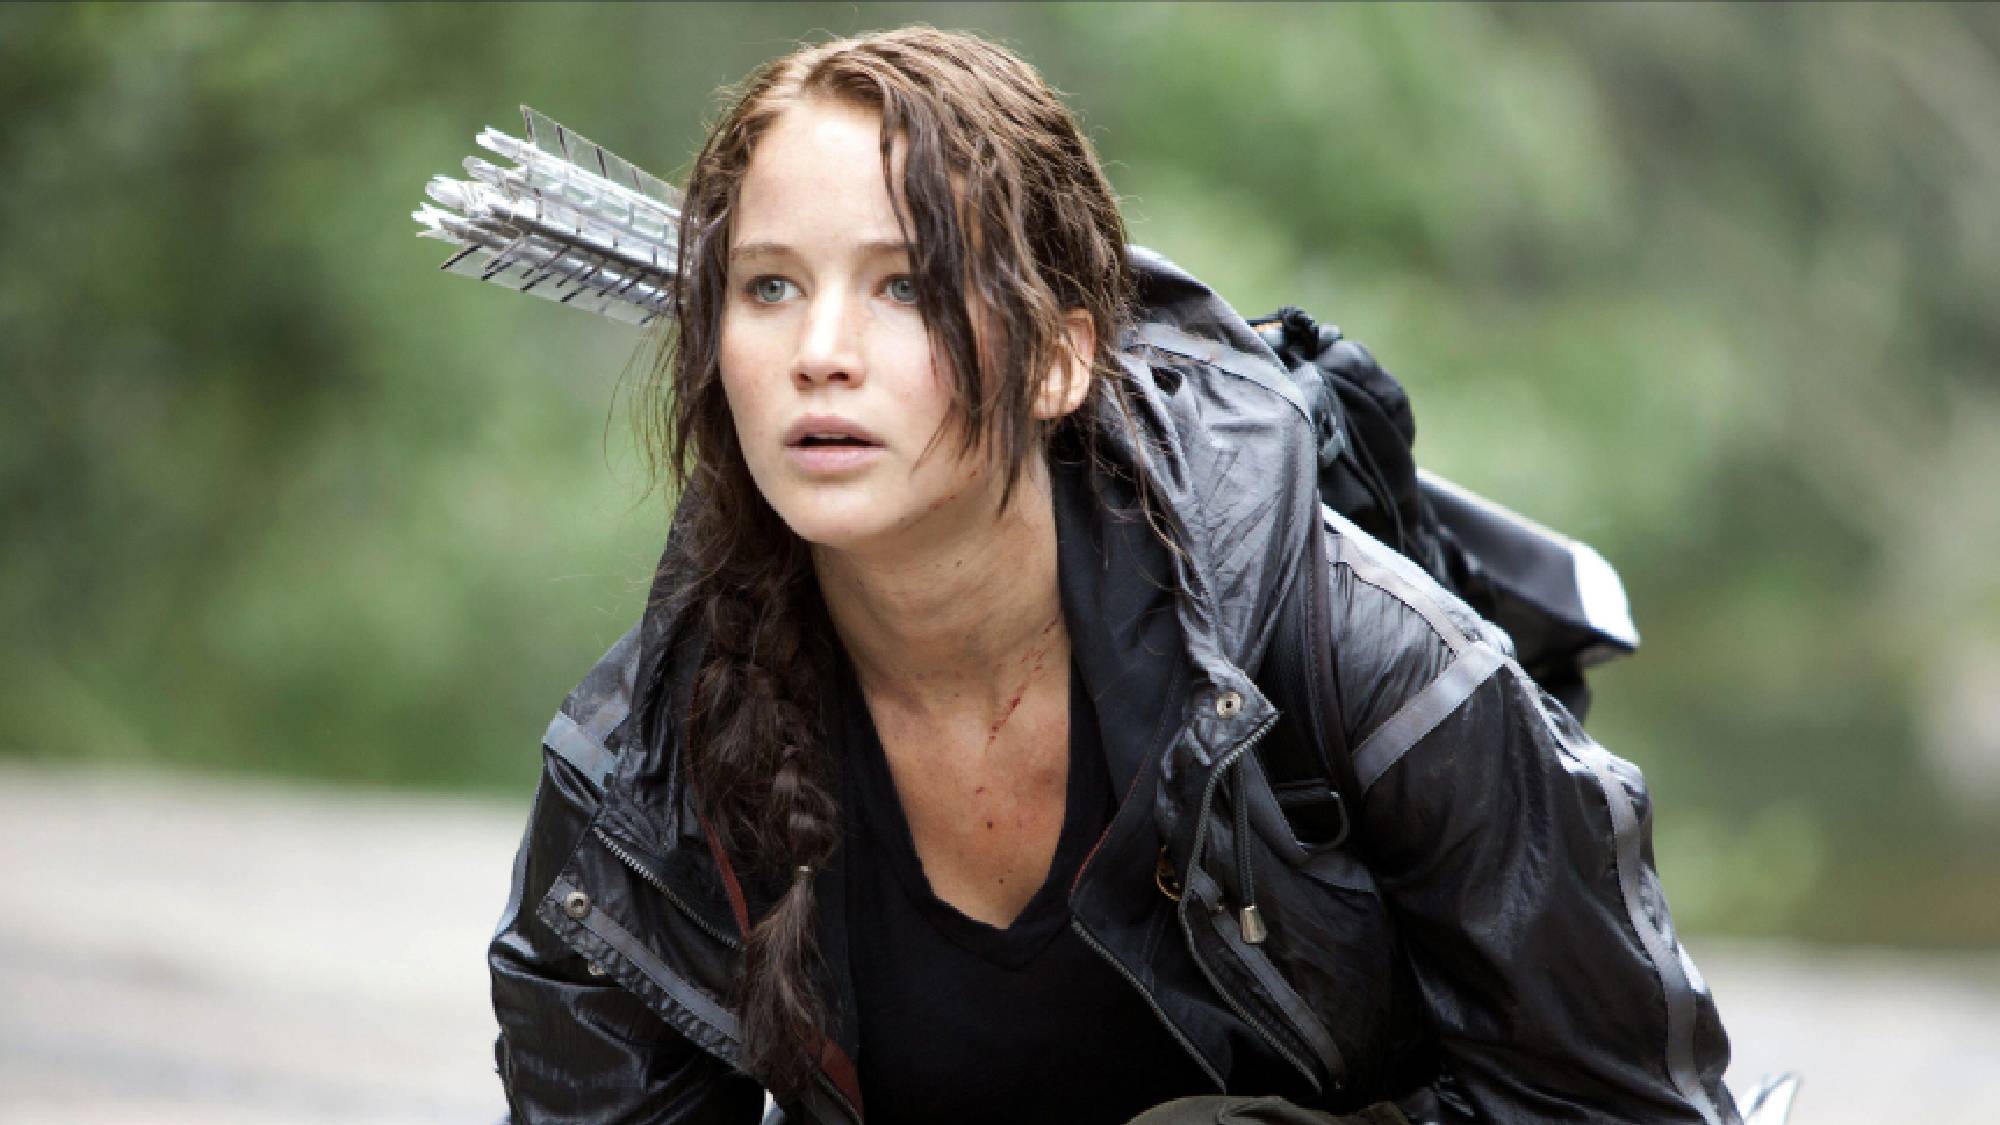 Jennifer Lawrence als Katniss Everdeen in „Die Tribute von Panem“.